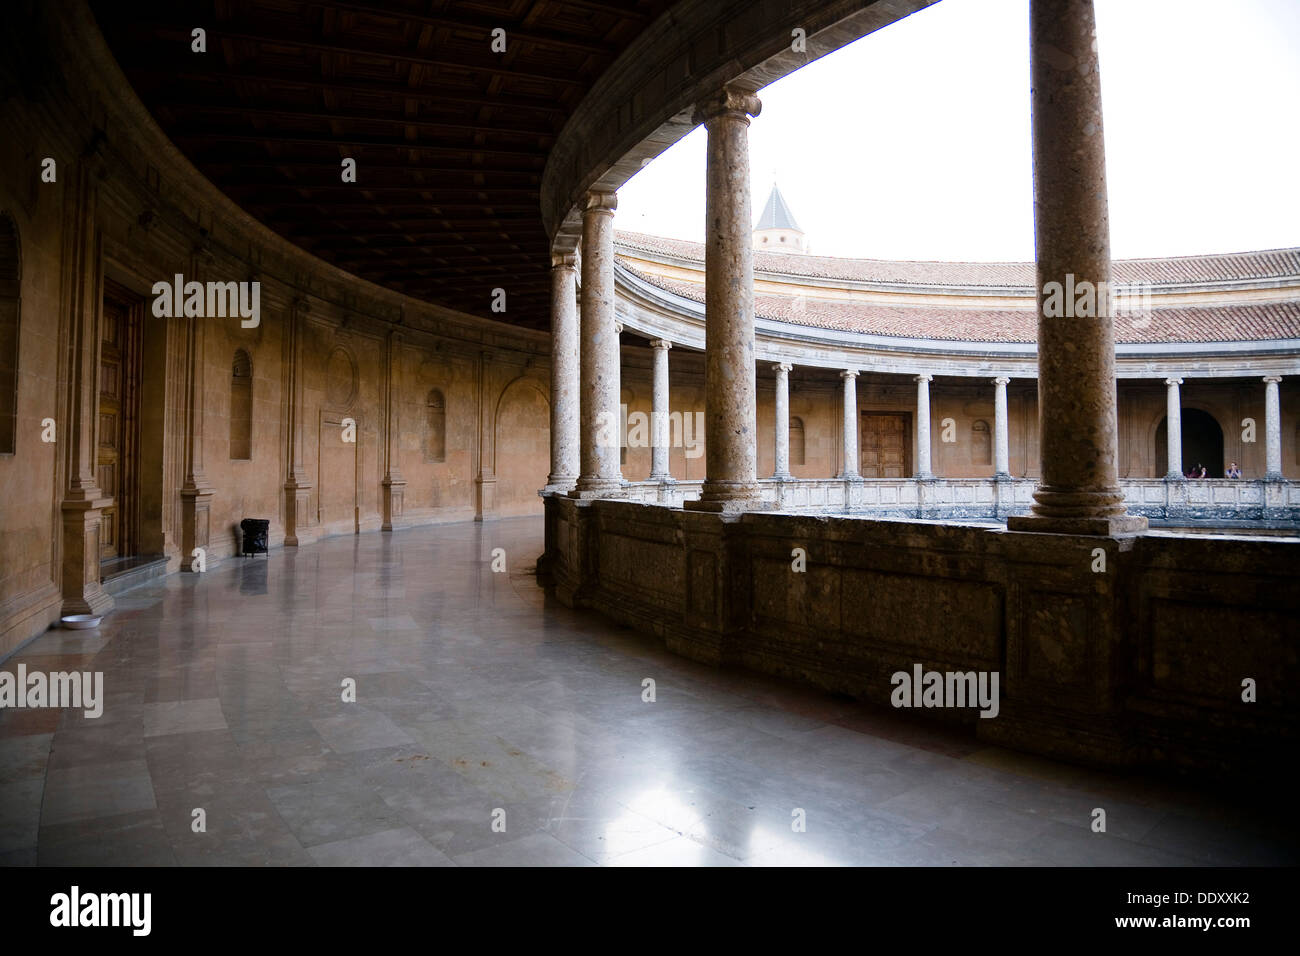 Der Palast Karls v., Alhambra, Granada, Spanien, 2007. Künstler: Samuel Magál Stockfoto